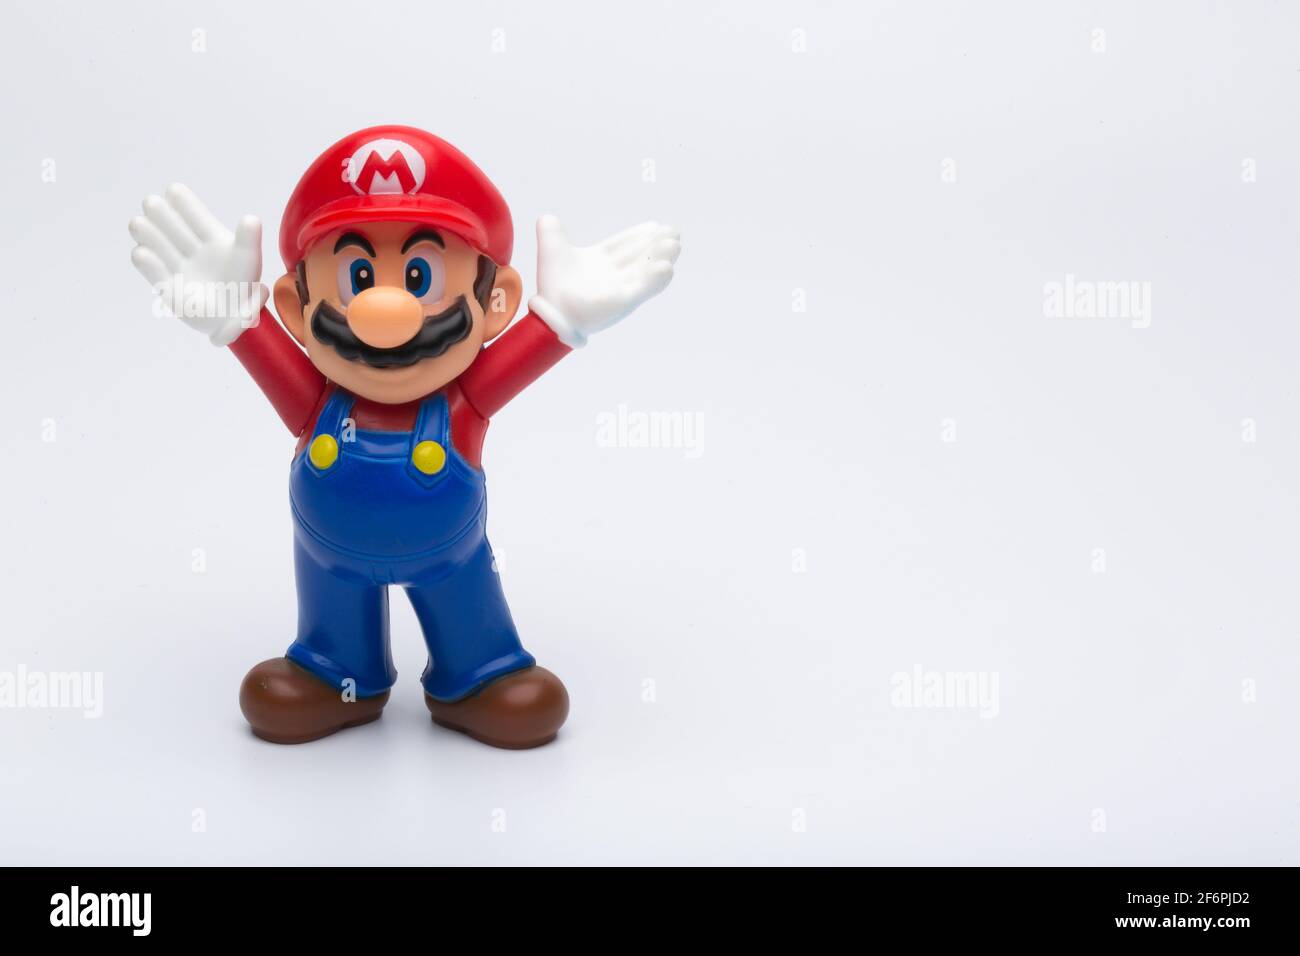 Moskau, Russland - 06. April 2021: Plastikfigur von Mario aus Nintendo-Videospiel isoliert auf weißem Hintergrund. Stockfoto